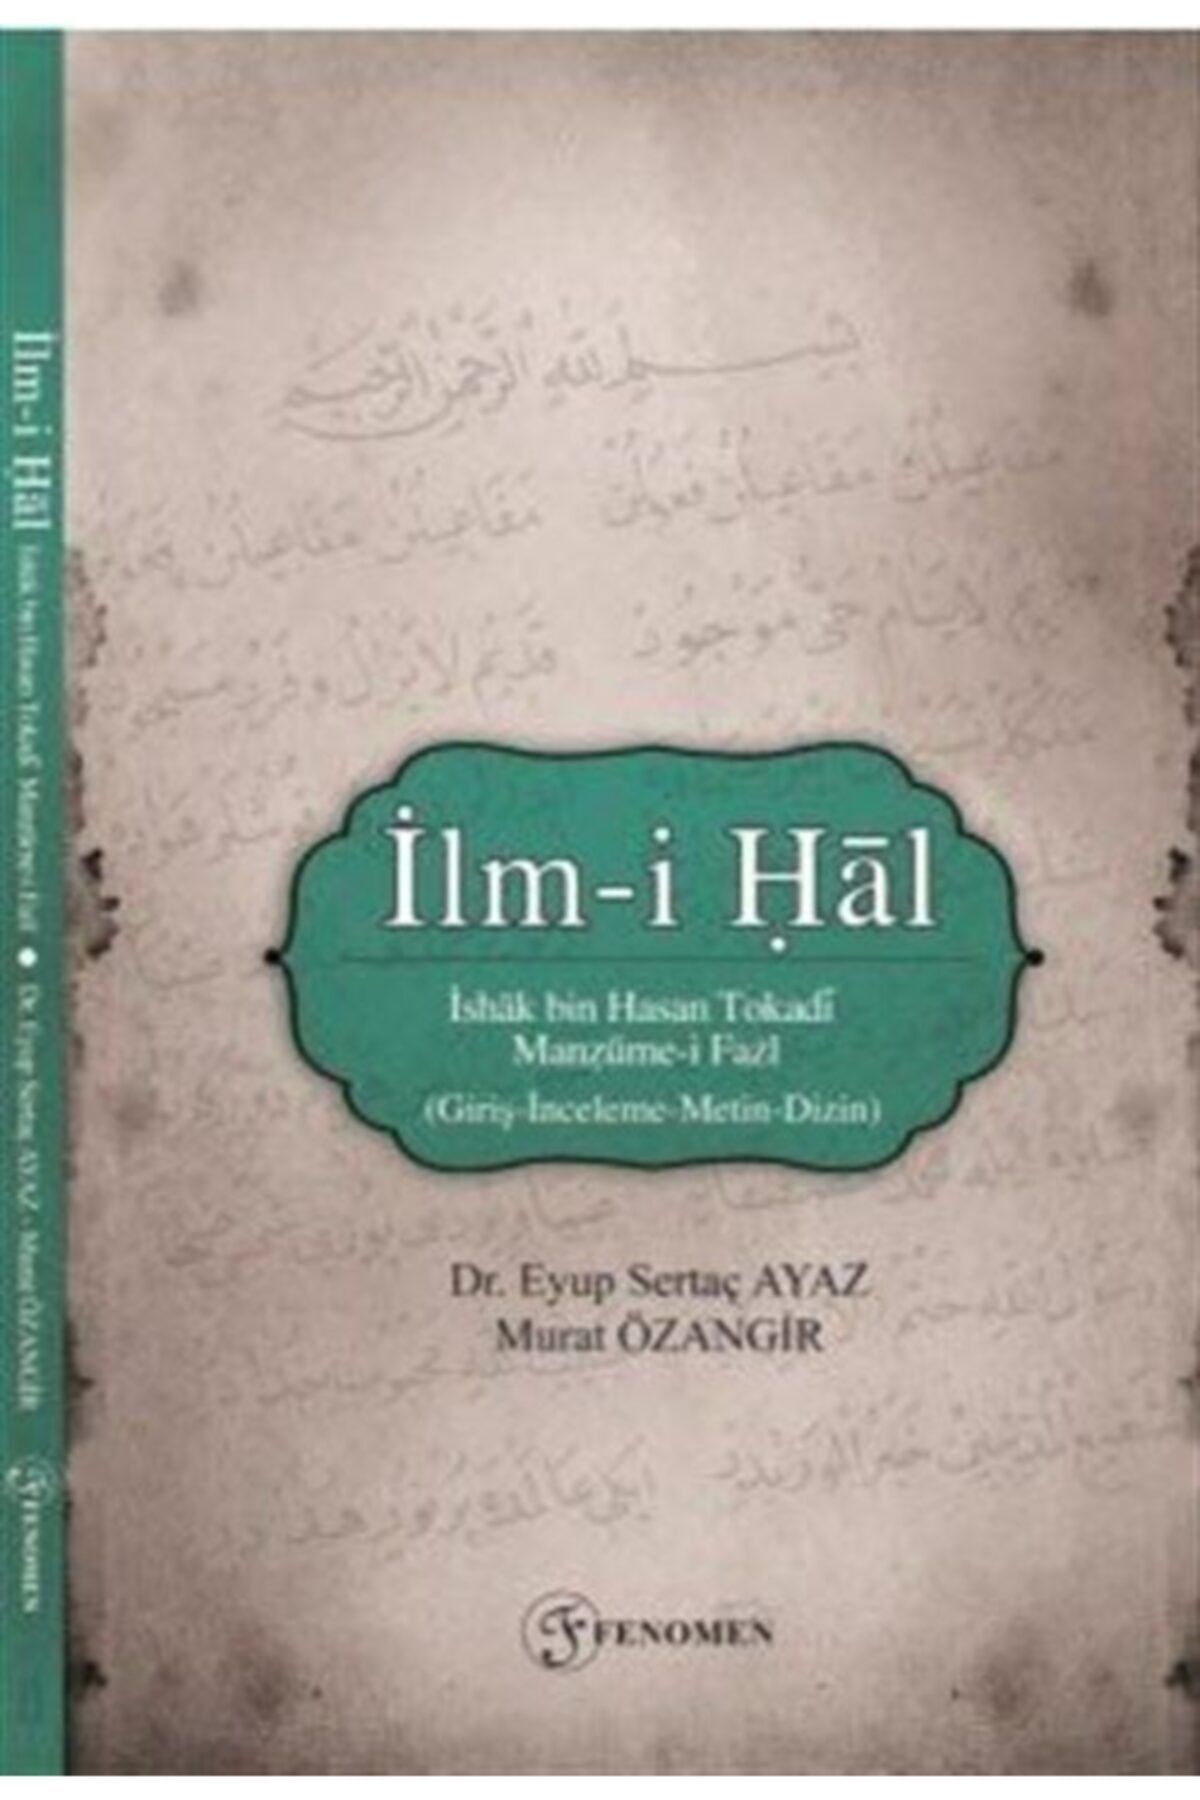 Fenomen Yayıncılık Ilm-i Hal & Ishak Bin Hasan Tokadi Manzume-i Fazl (giriş-inceleme-metin-dizin)